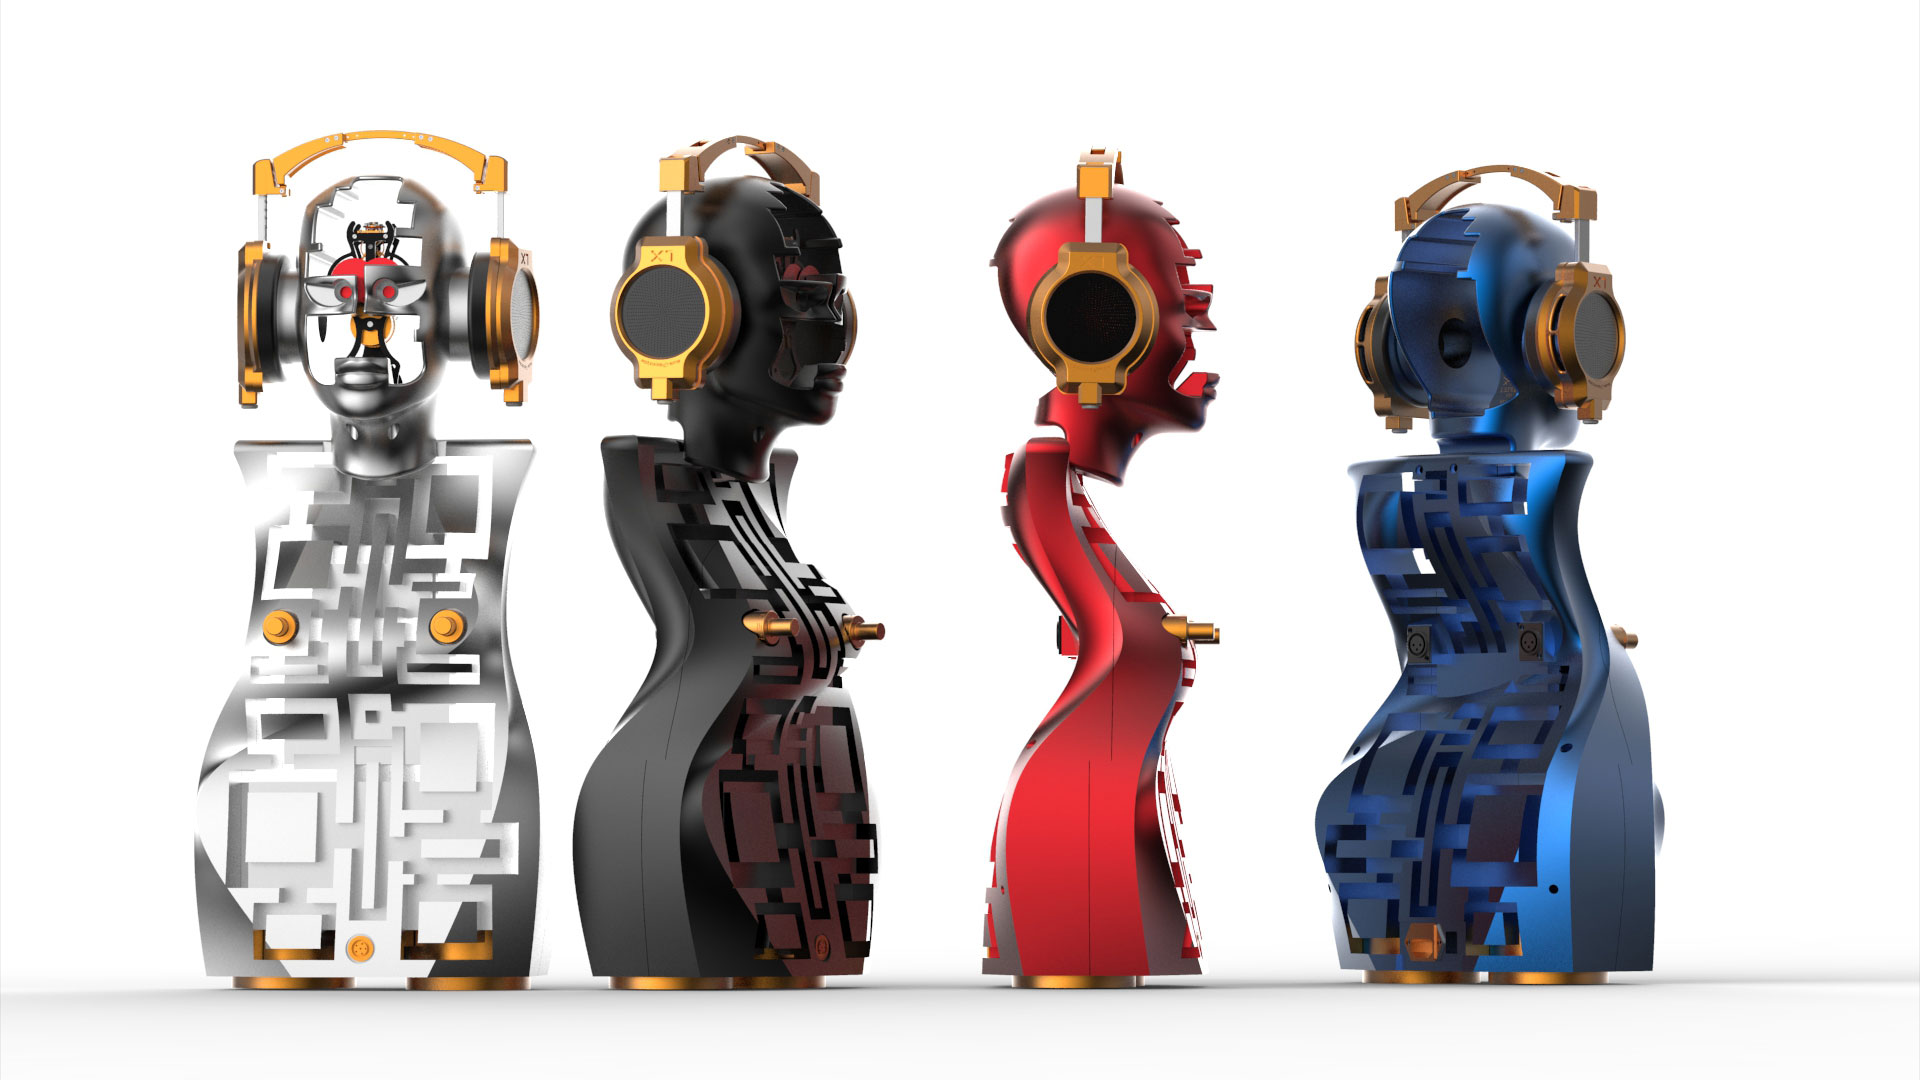 Kopfhörerverstärker in Skulpturen-Form mit Uhr: Metaxas & Sins Ethereal (Bild: Metaxas & Sins)